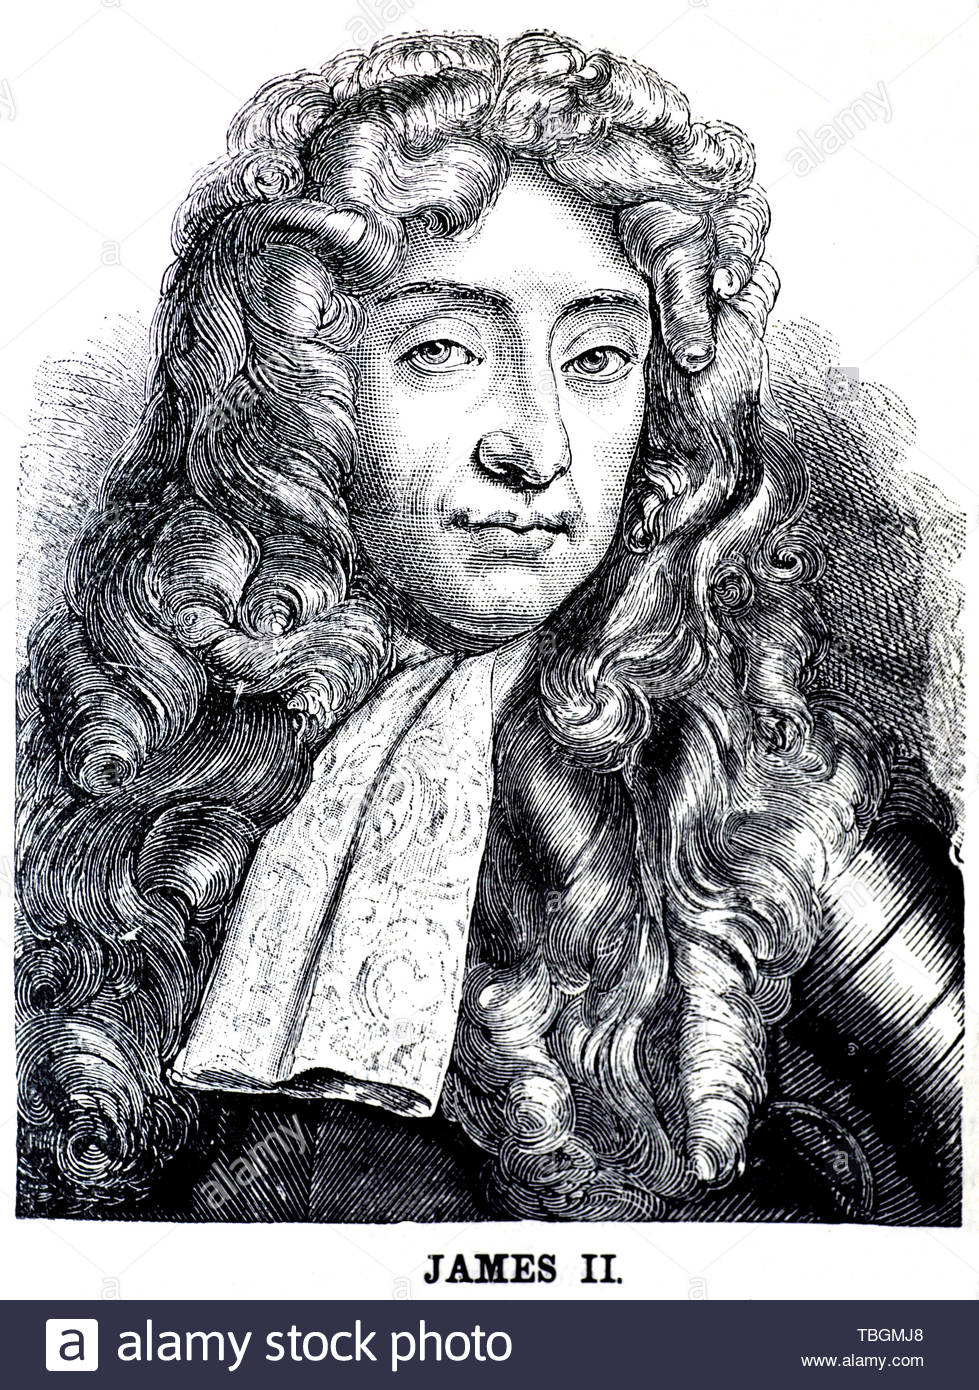 Jacques II et VII, 1633 - 1701, était roi d'Angleterre et l'Irlande en tant que Jacques II et Roi d'Ecosse comme James VII, du 6 février 1685 jusqu'à ce qu'il a été déposé dans la glorieuse révolution de 1688 Banque D'Images